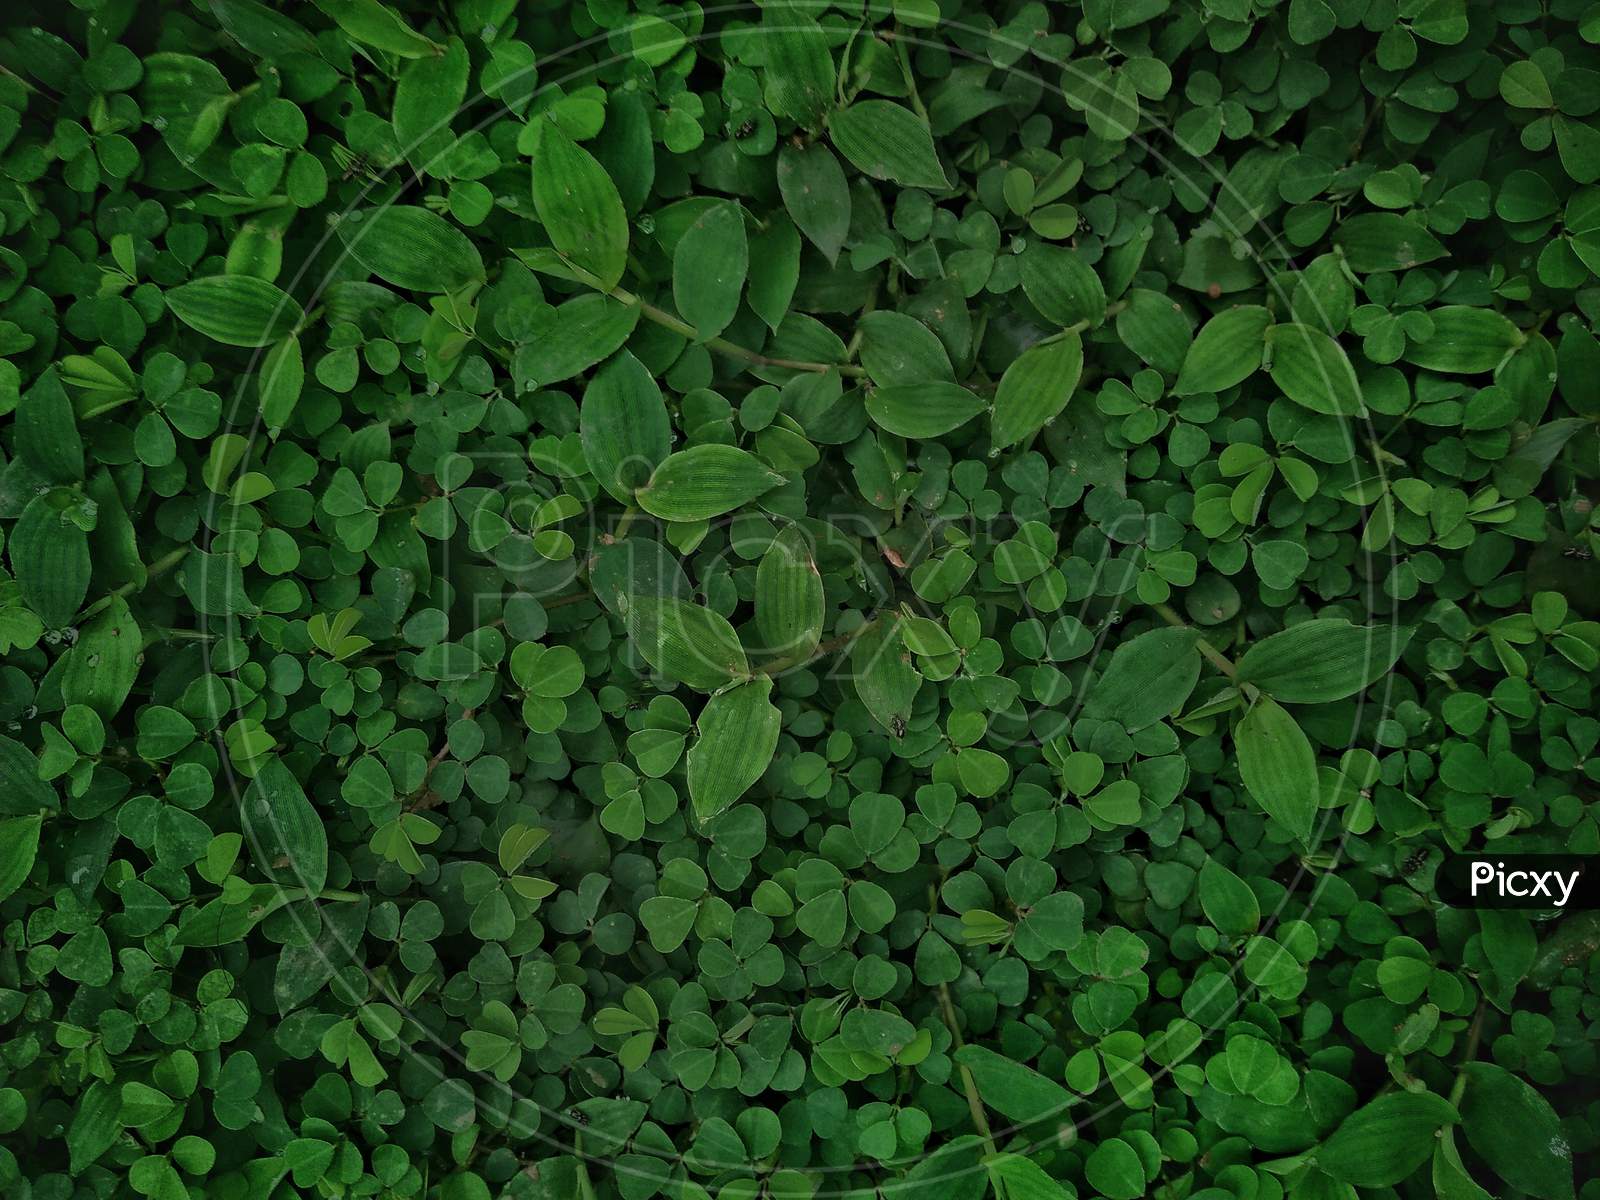 Green Leafs Of Aquatic Plants